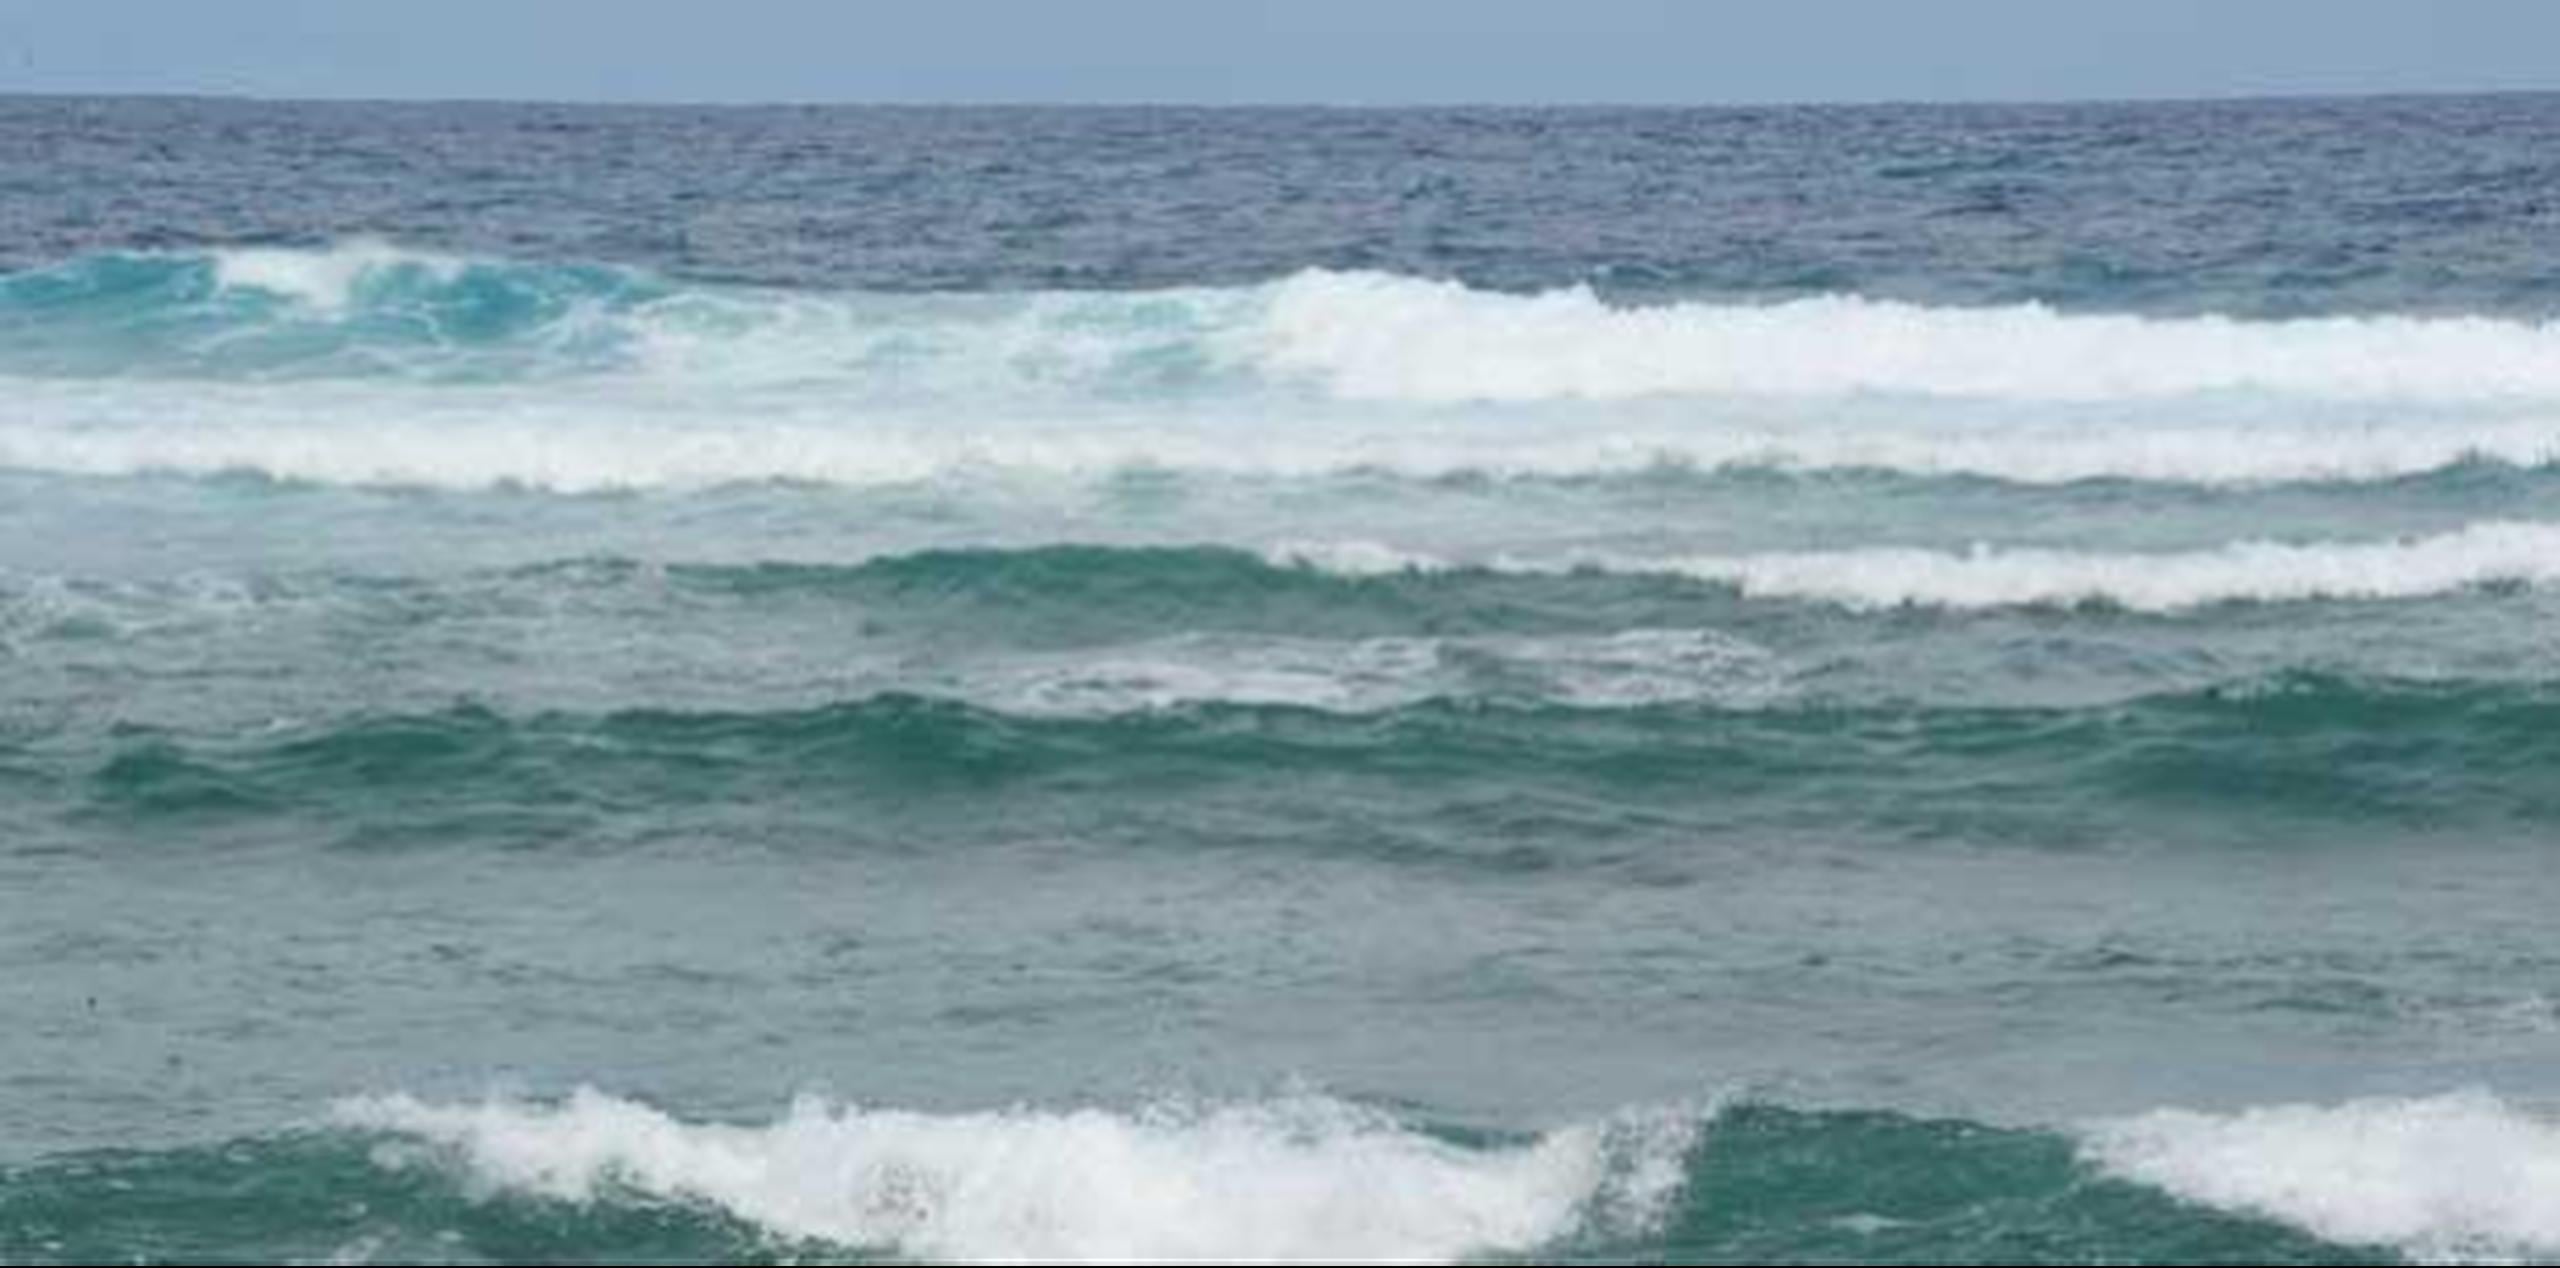 El Servicio Nacional de Meteorología solicita a los bañistas que no entren a las playas del litoral norte ante el riesgo del oleaje y las corrientes submarinas. (Archivo)